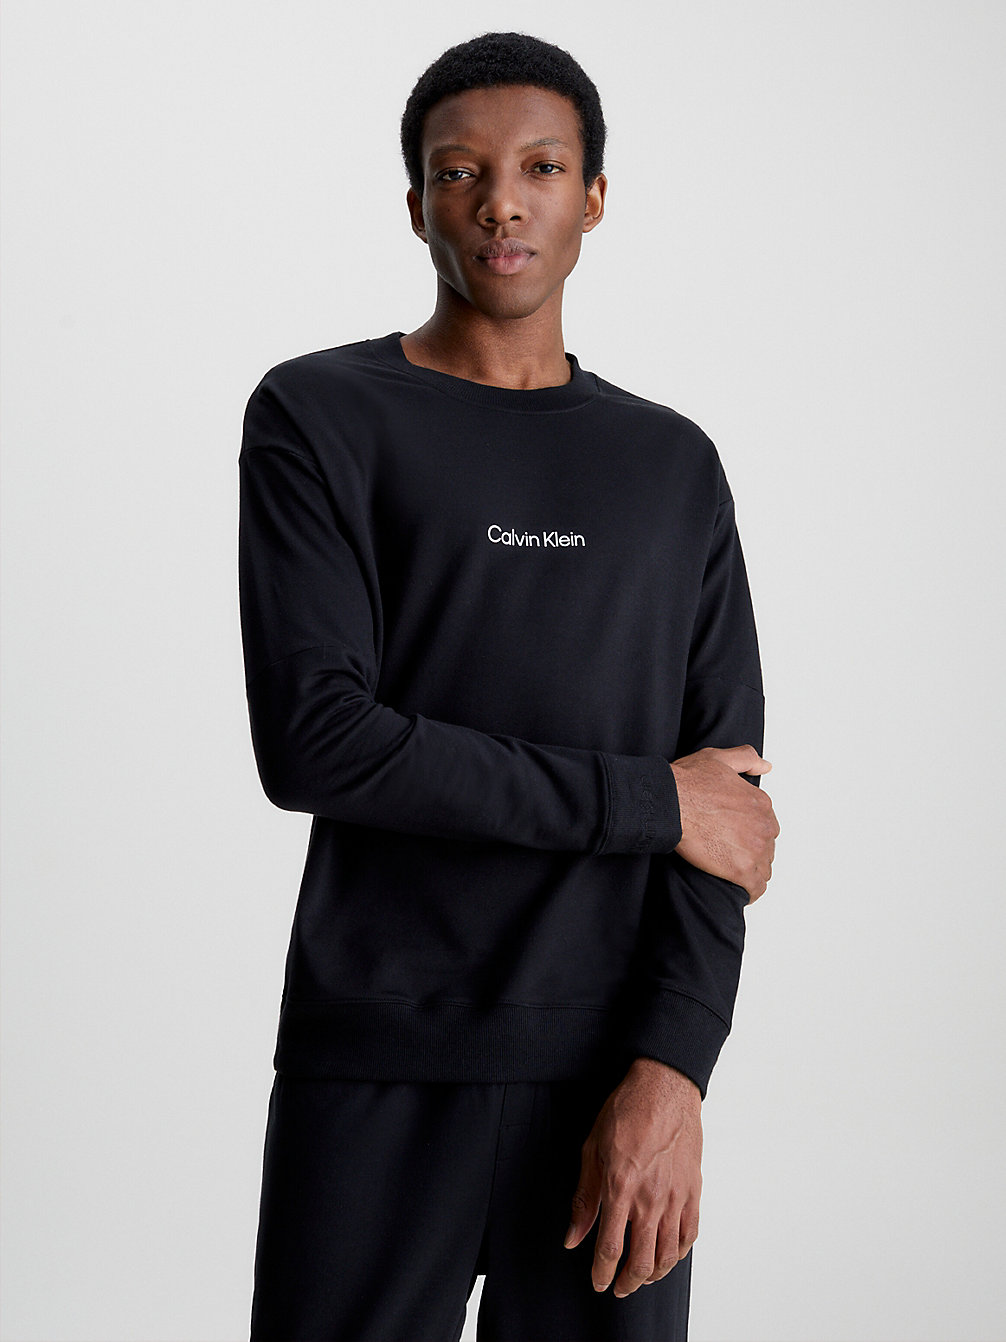 BLACK Lounge-Sweatshirt – Modern Structure undefined Herren Calvin Klein